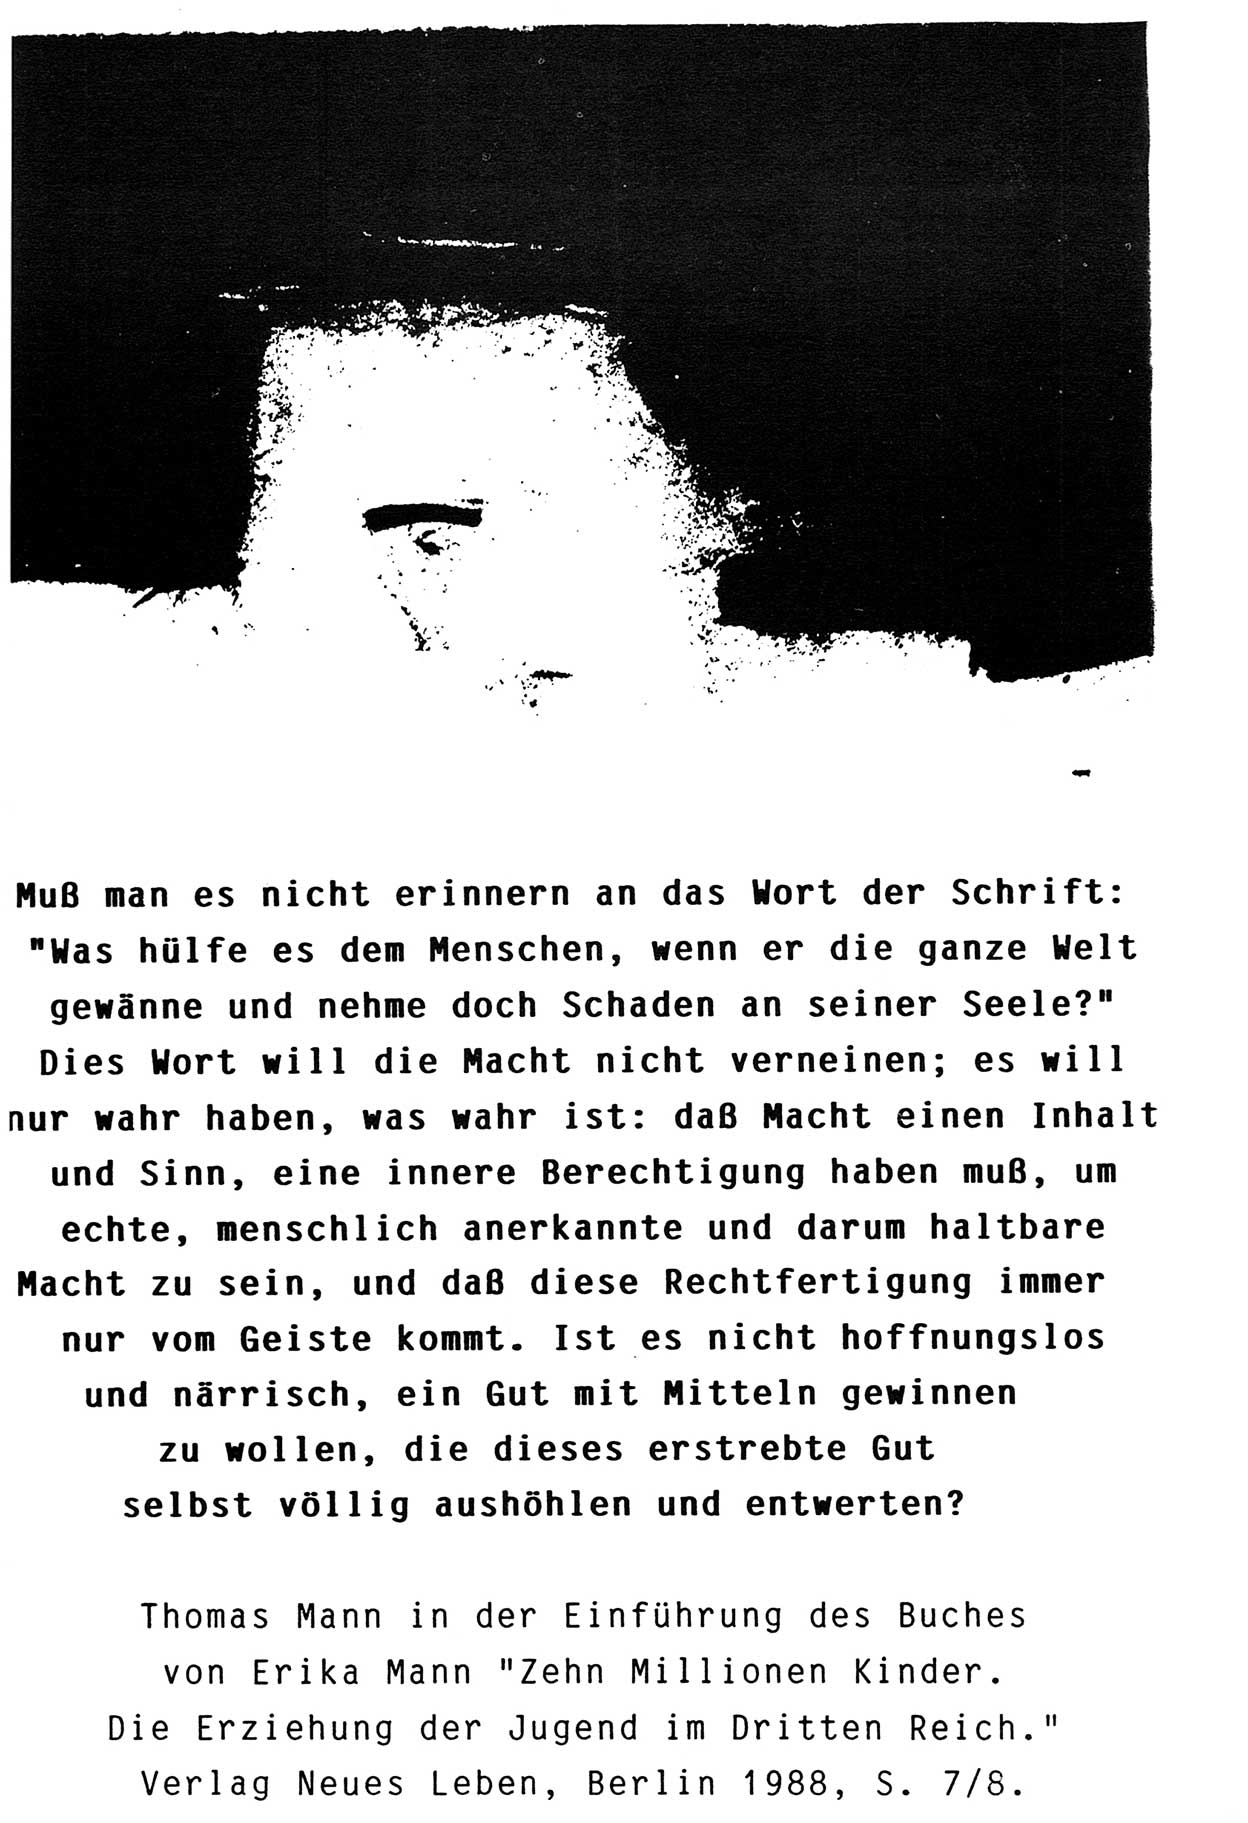 Zwie-Gespräch, Beiträge zur Aufarbeitung der Stasi-Vergangenheit [Deutsche Demokratische Republik (DDR)], Ausgabe Nr. 3, Berlin 1991, Seite 1 (Zwie-Gespr. Ausg. 3 1991, S. 1)